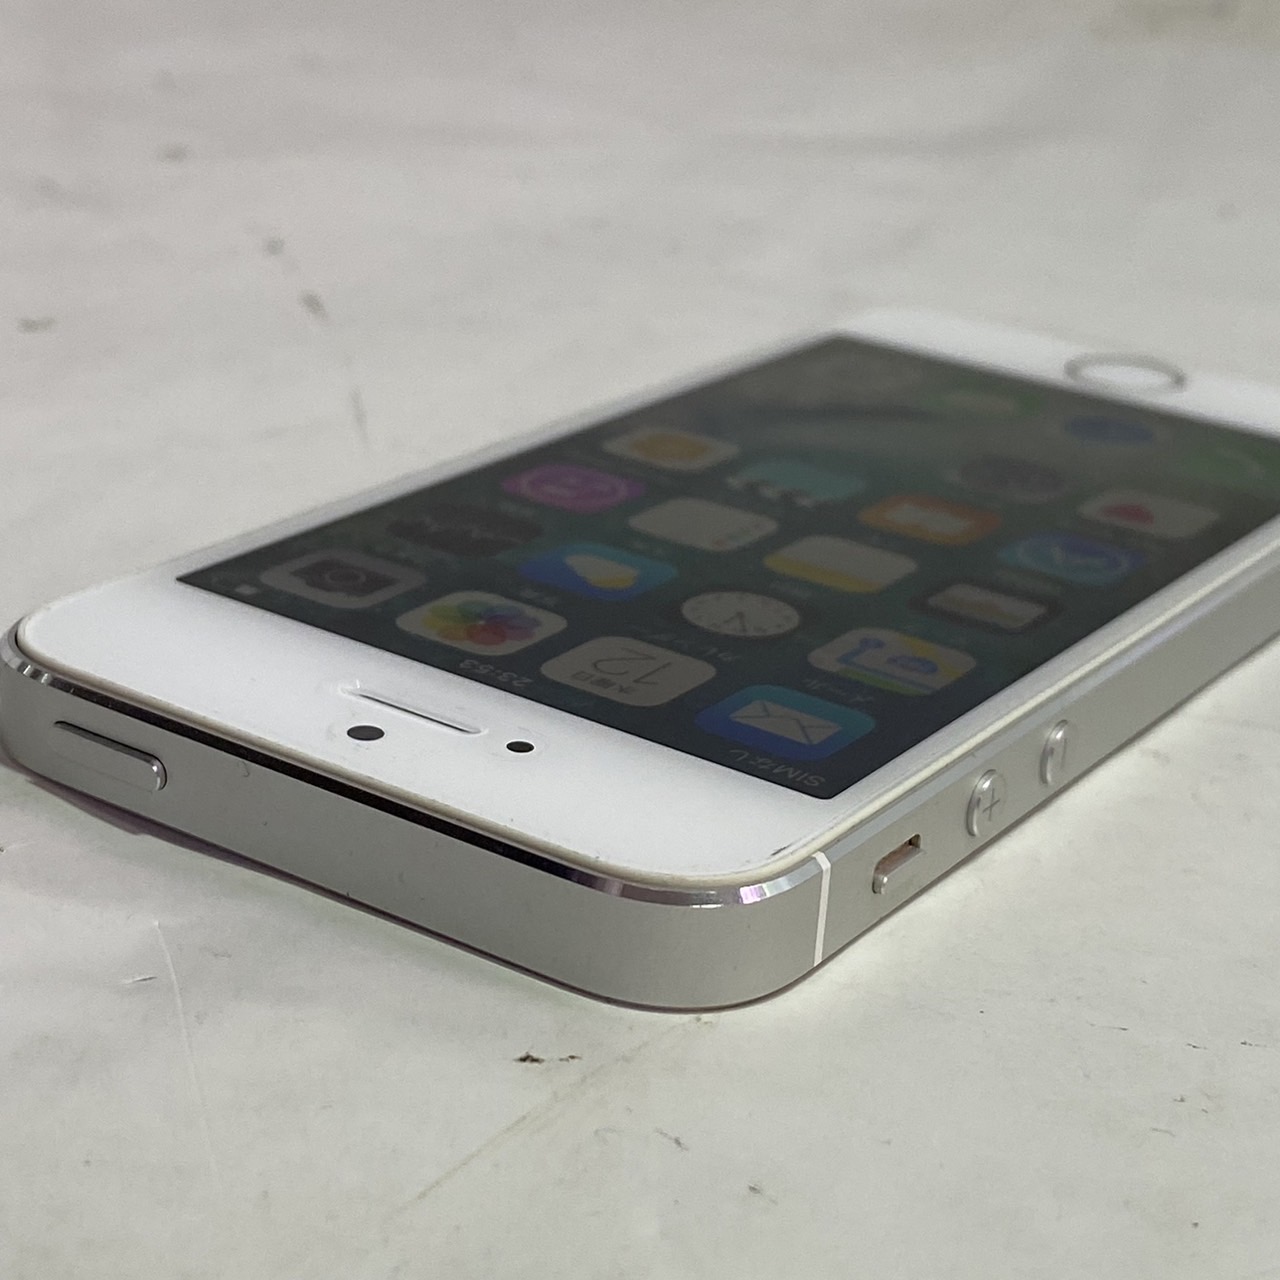 APPLE(アップル) iPhone SE 16GB 第一世代 [シルバー]の激安通販